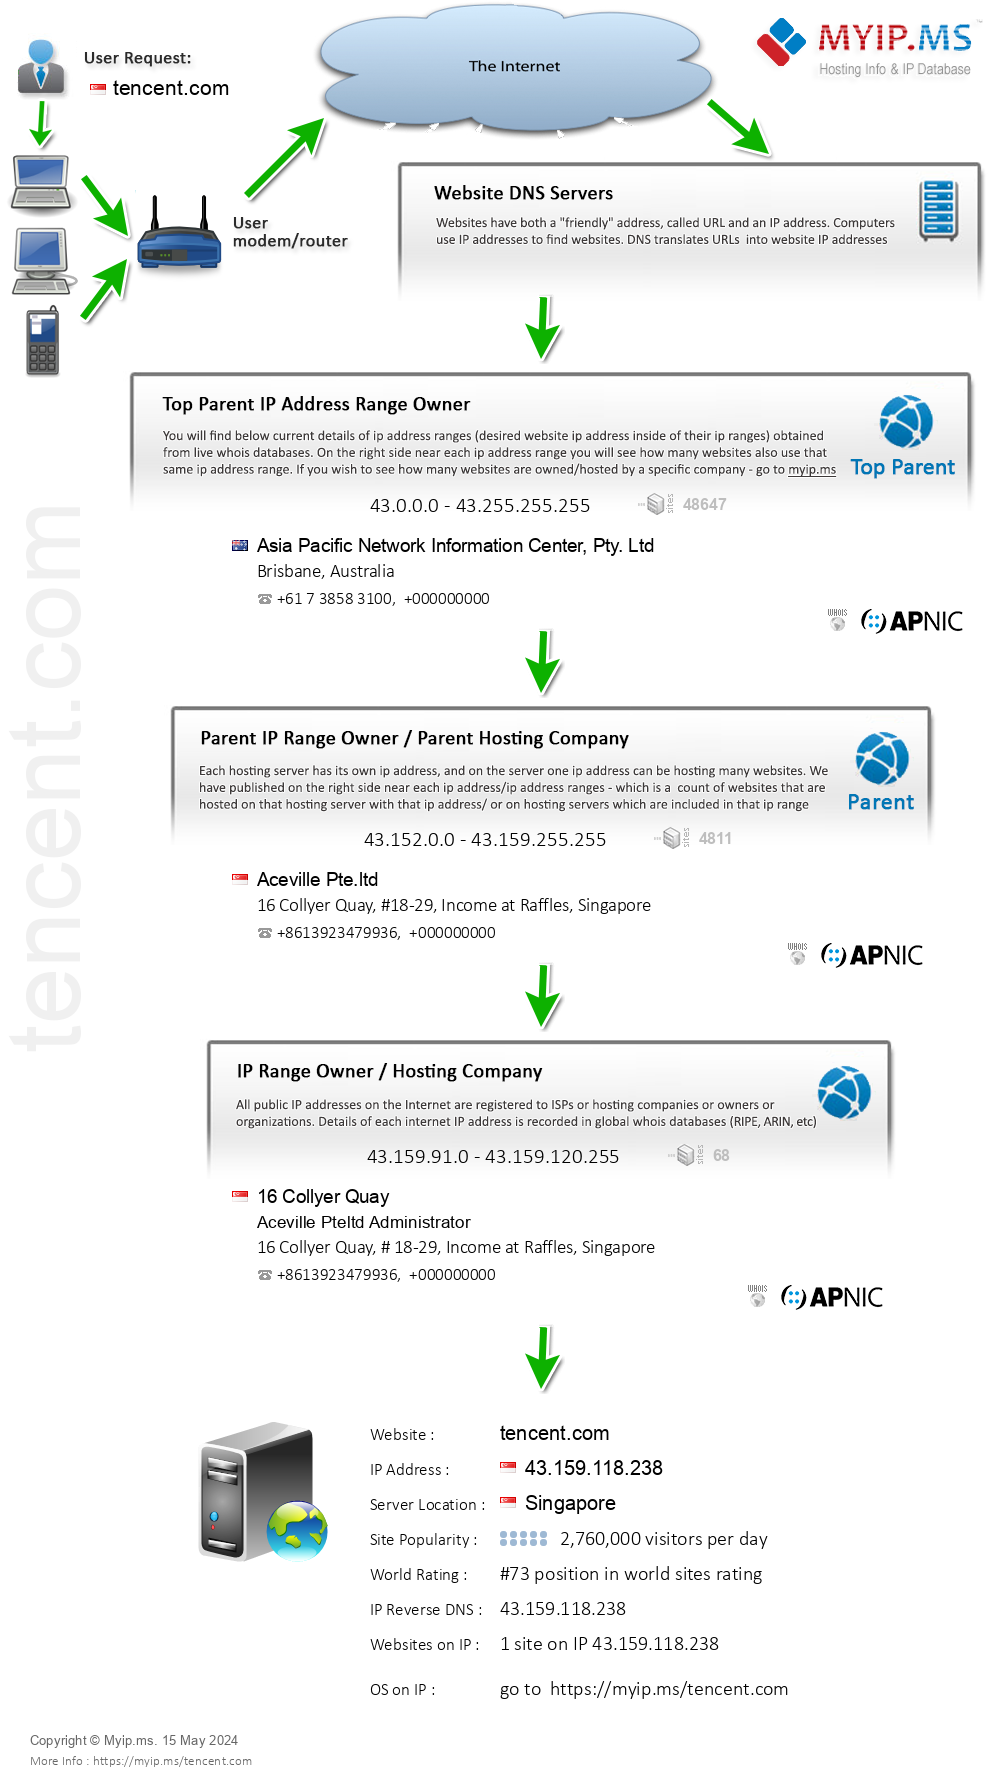 Tencent.com - Website Hosting Visual IP Diagram